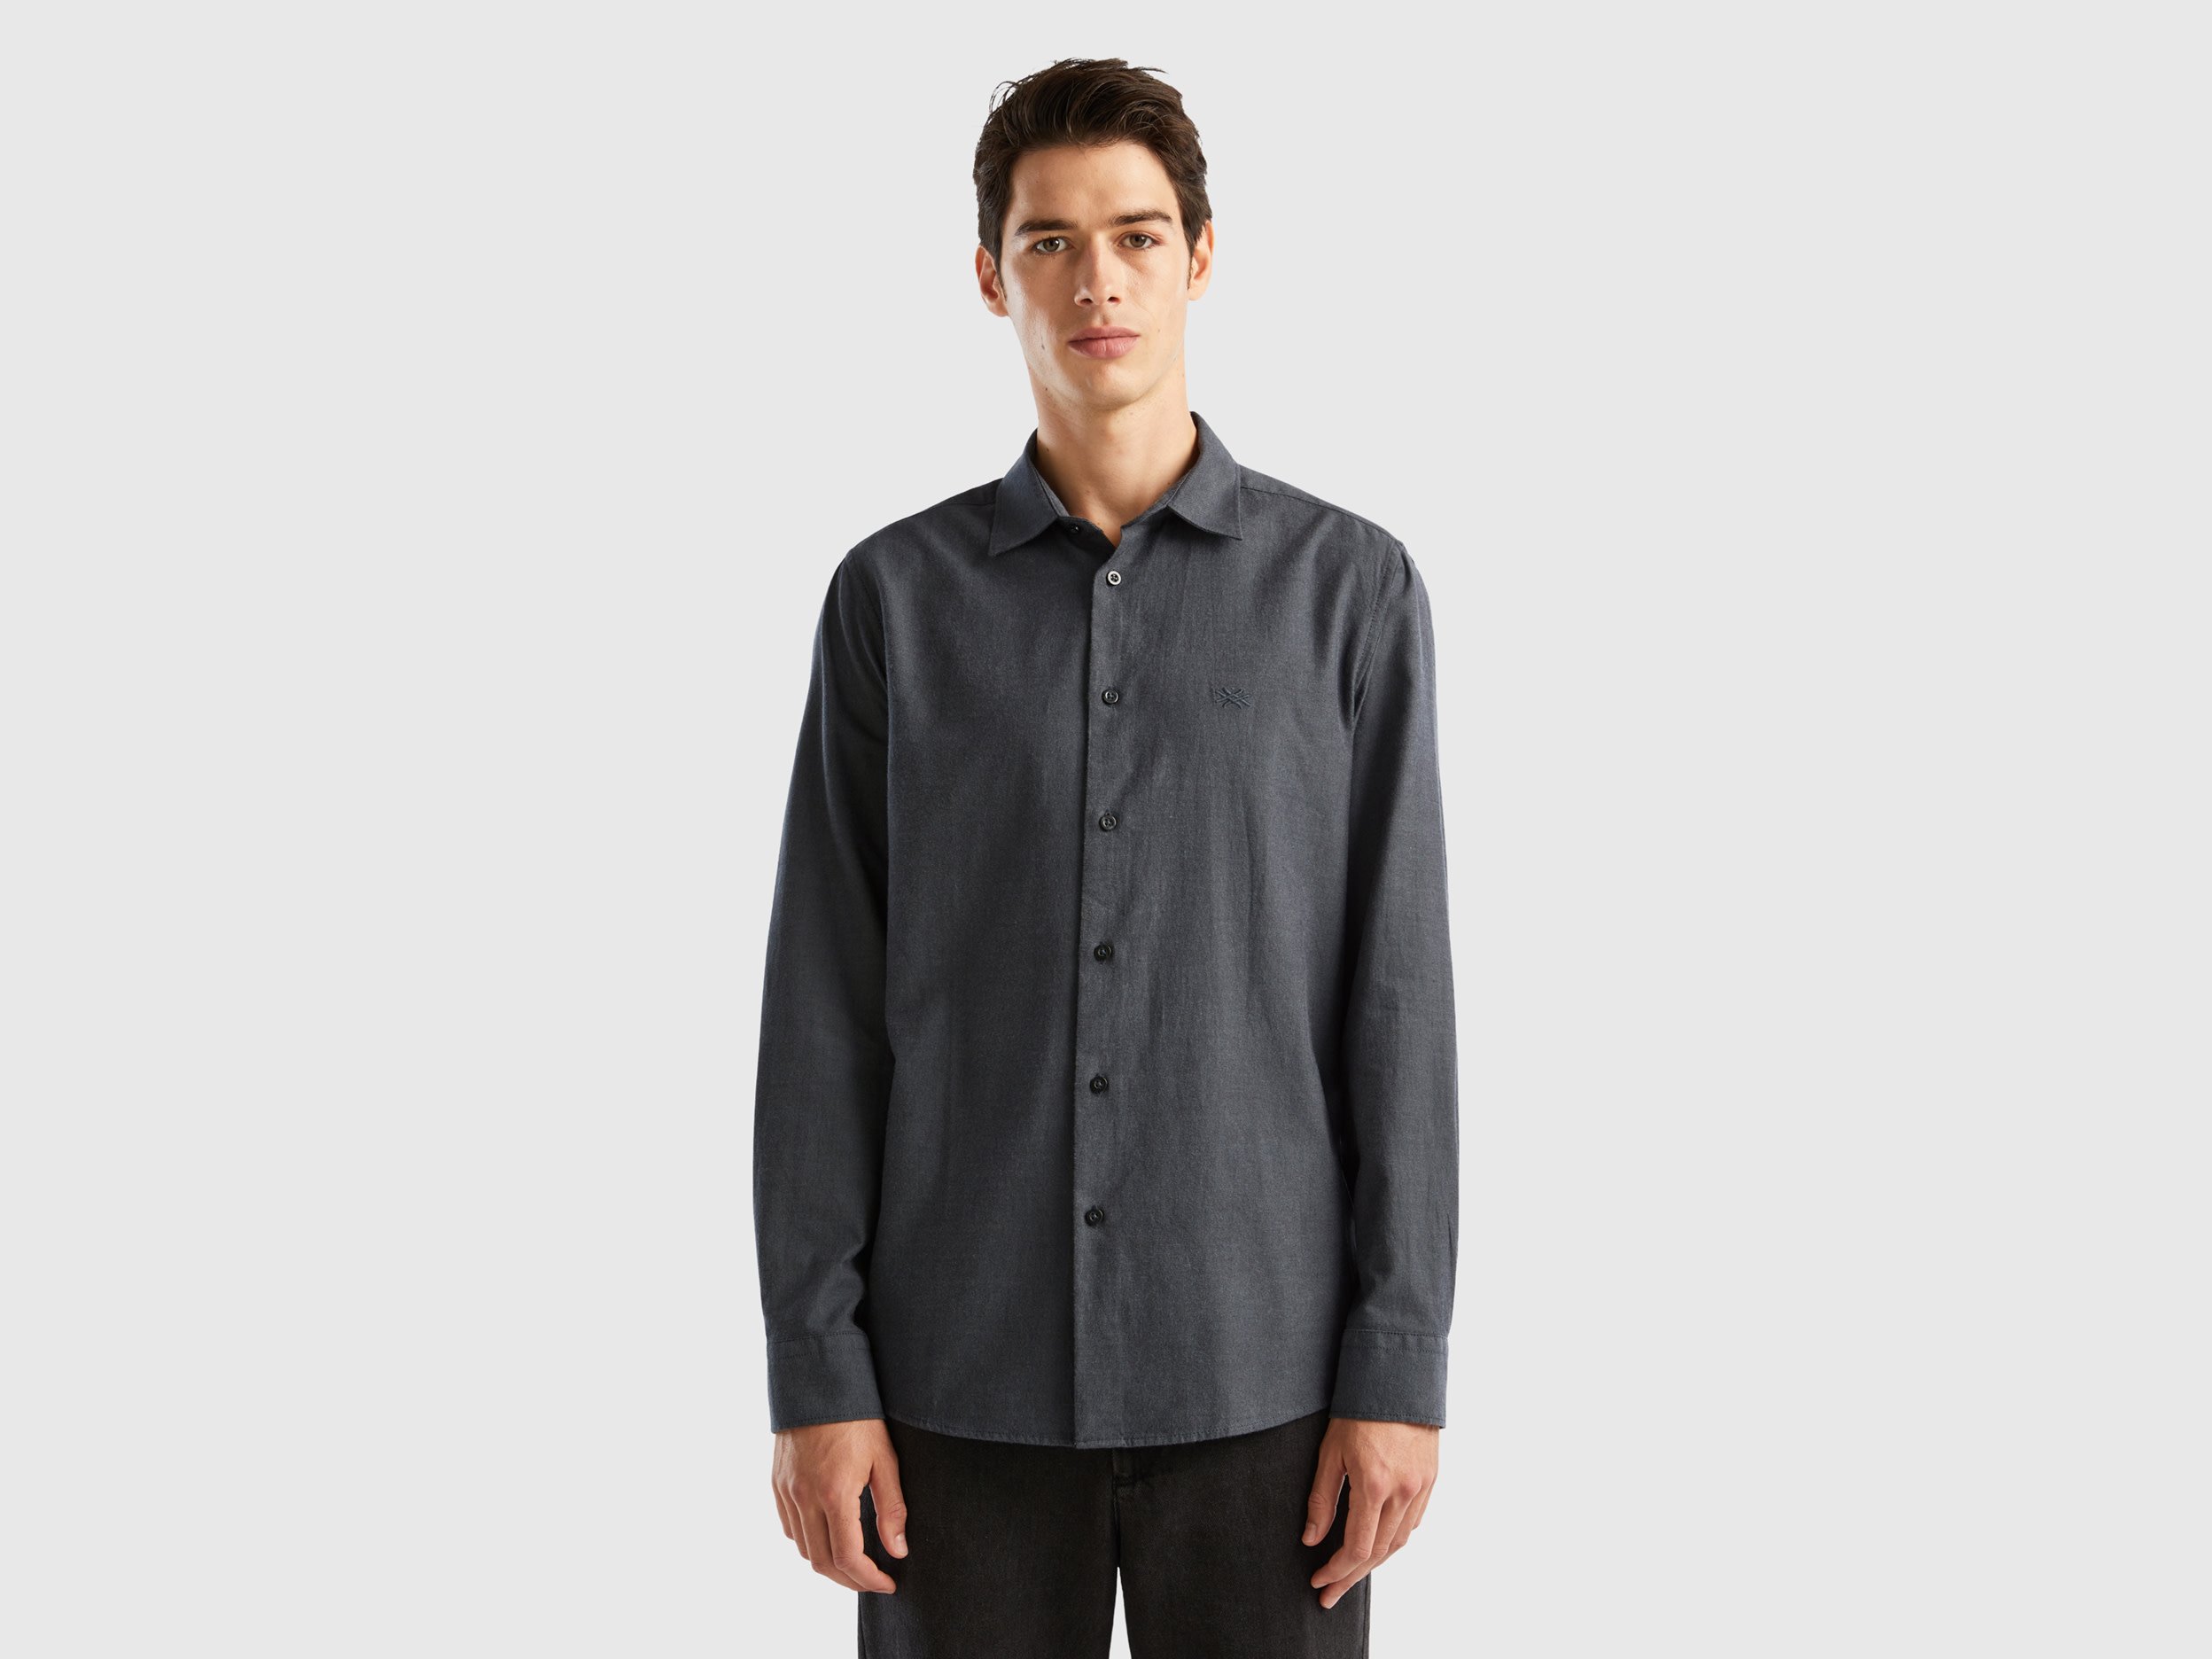 Benetton, Slim Fit Flannel Shirt, size XXXL, Dark Gray, Men